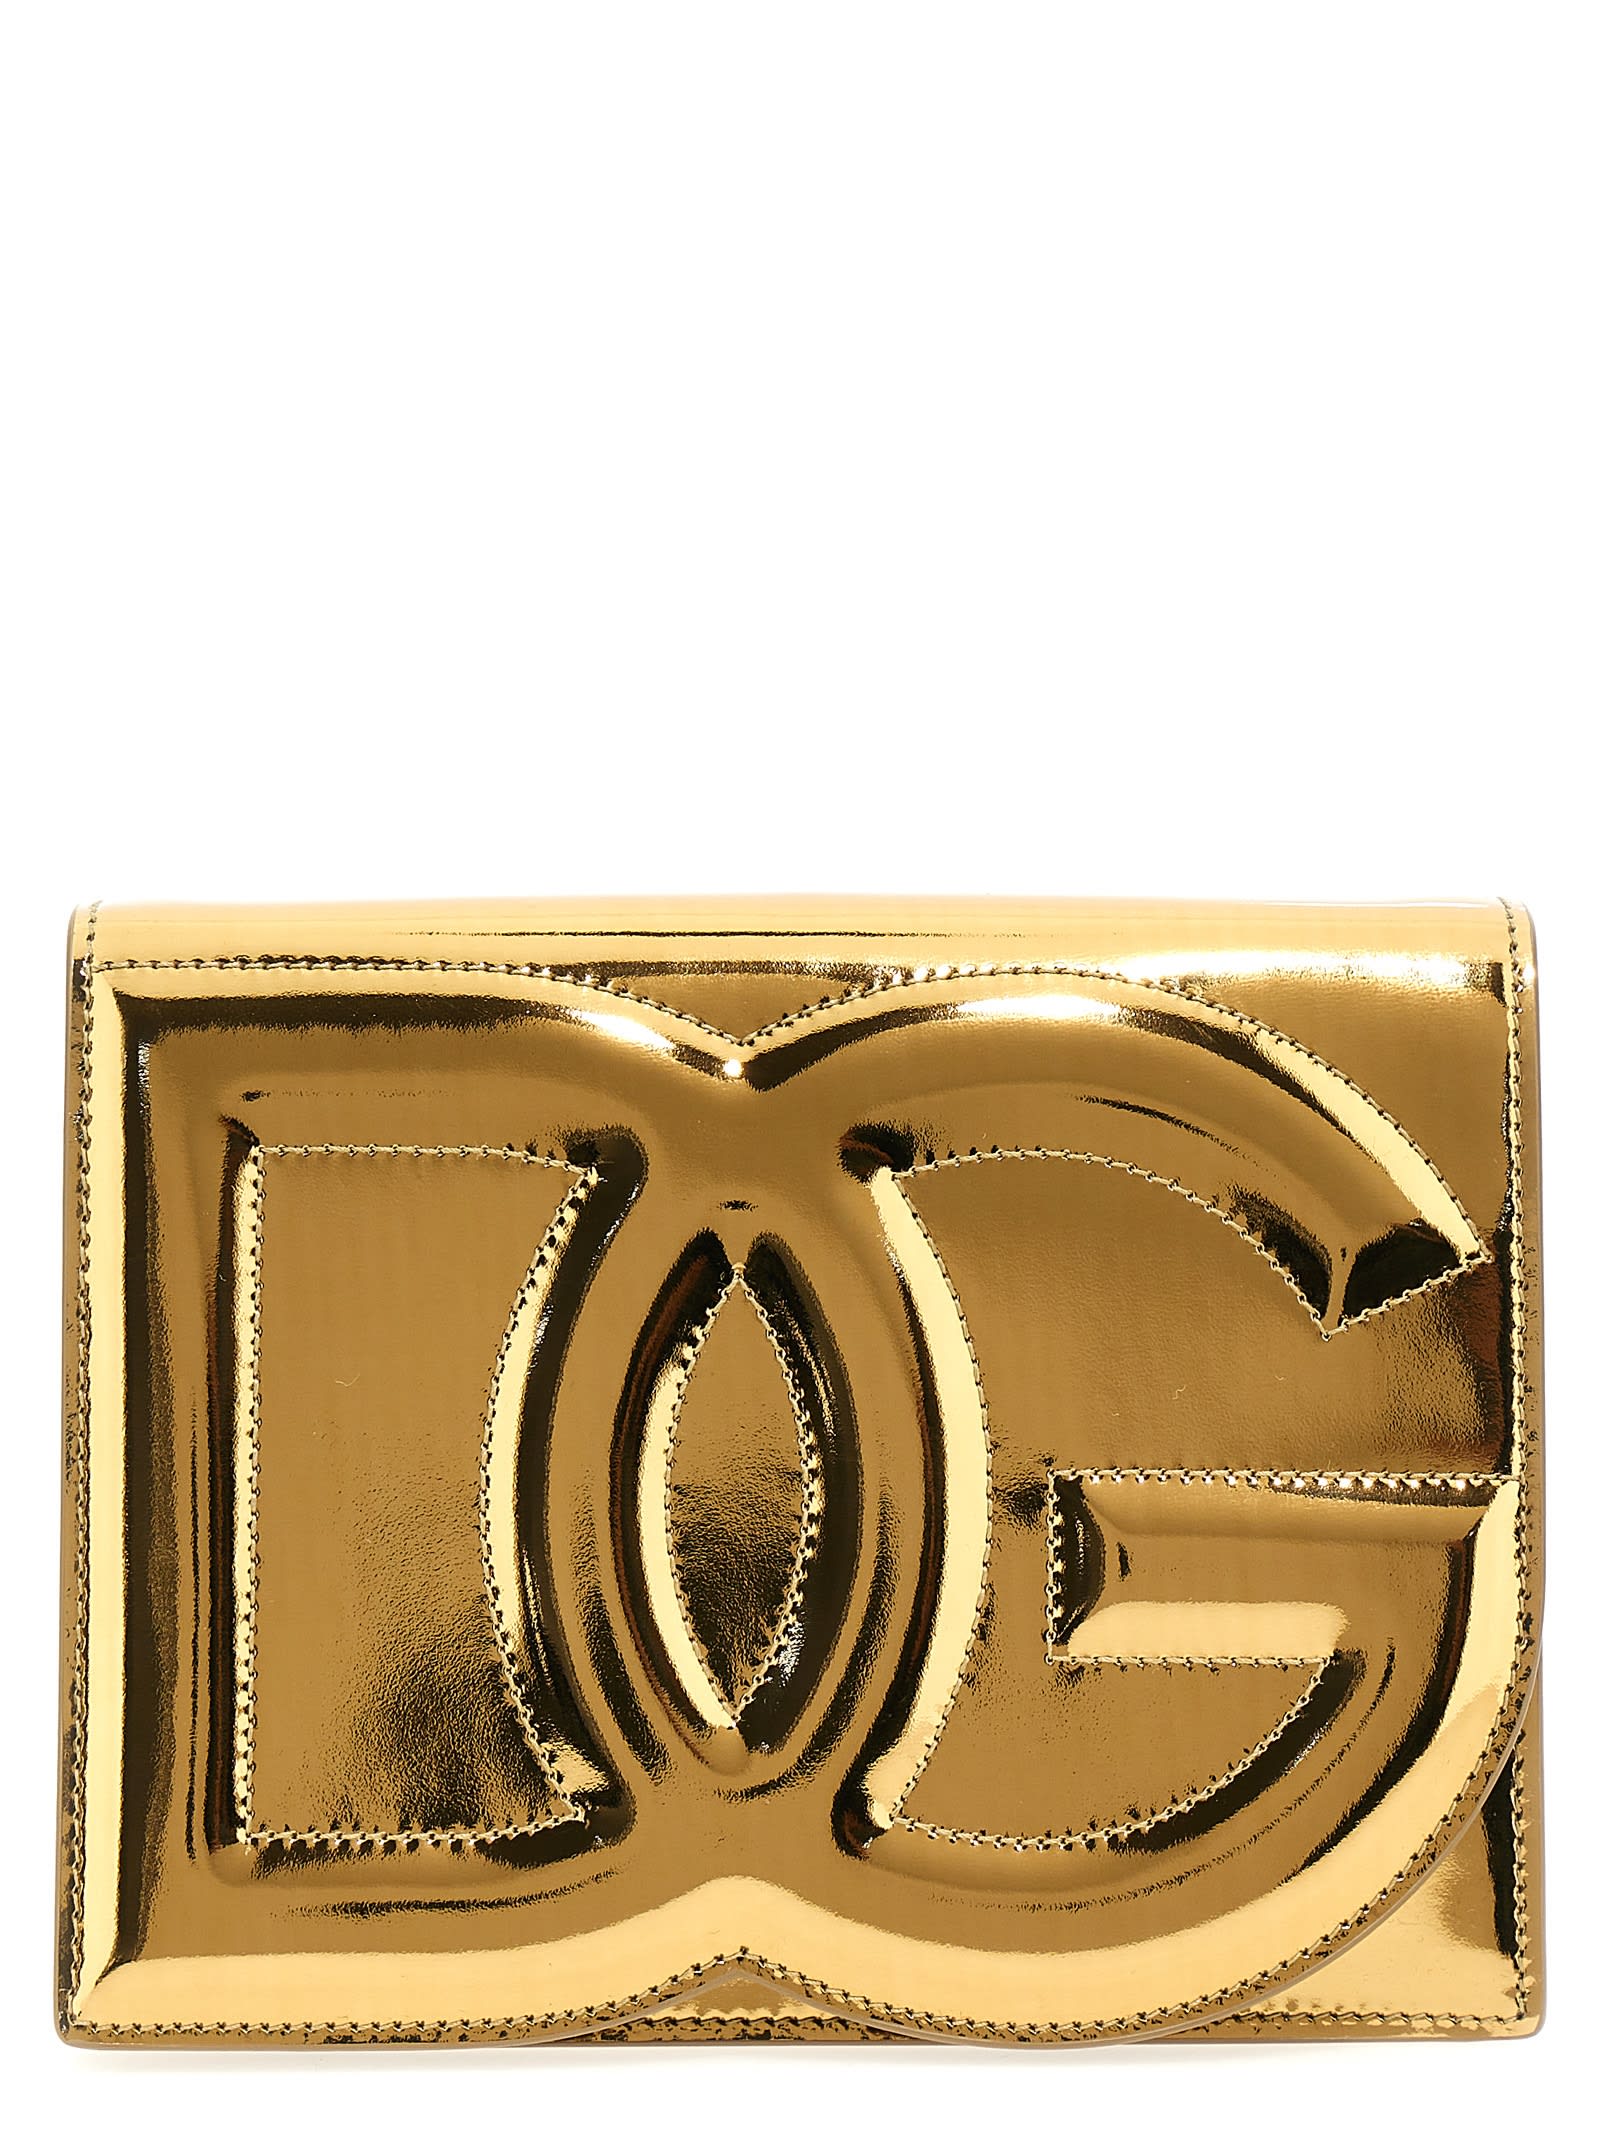 Dolce & Gabbana Dg Logo Bag Shoulder Bag